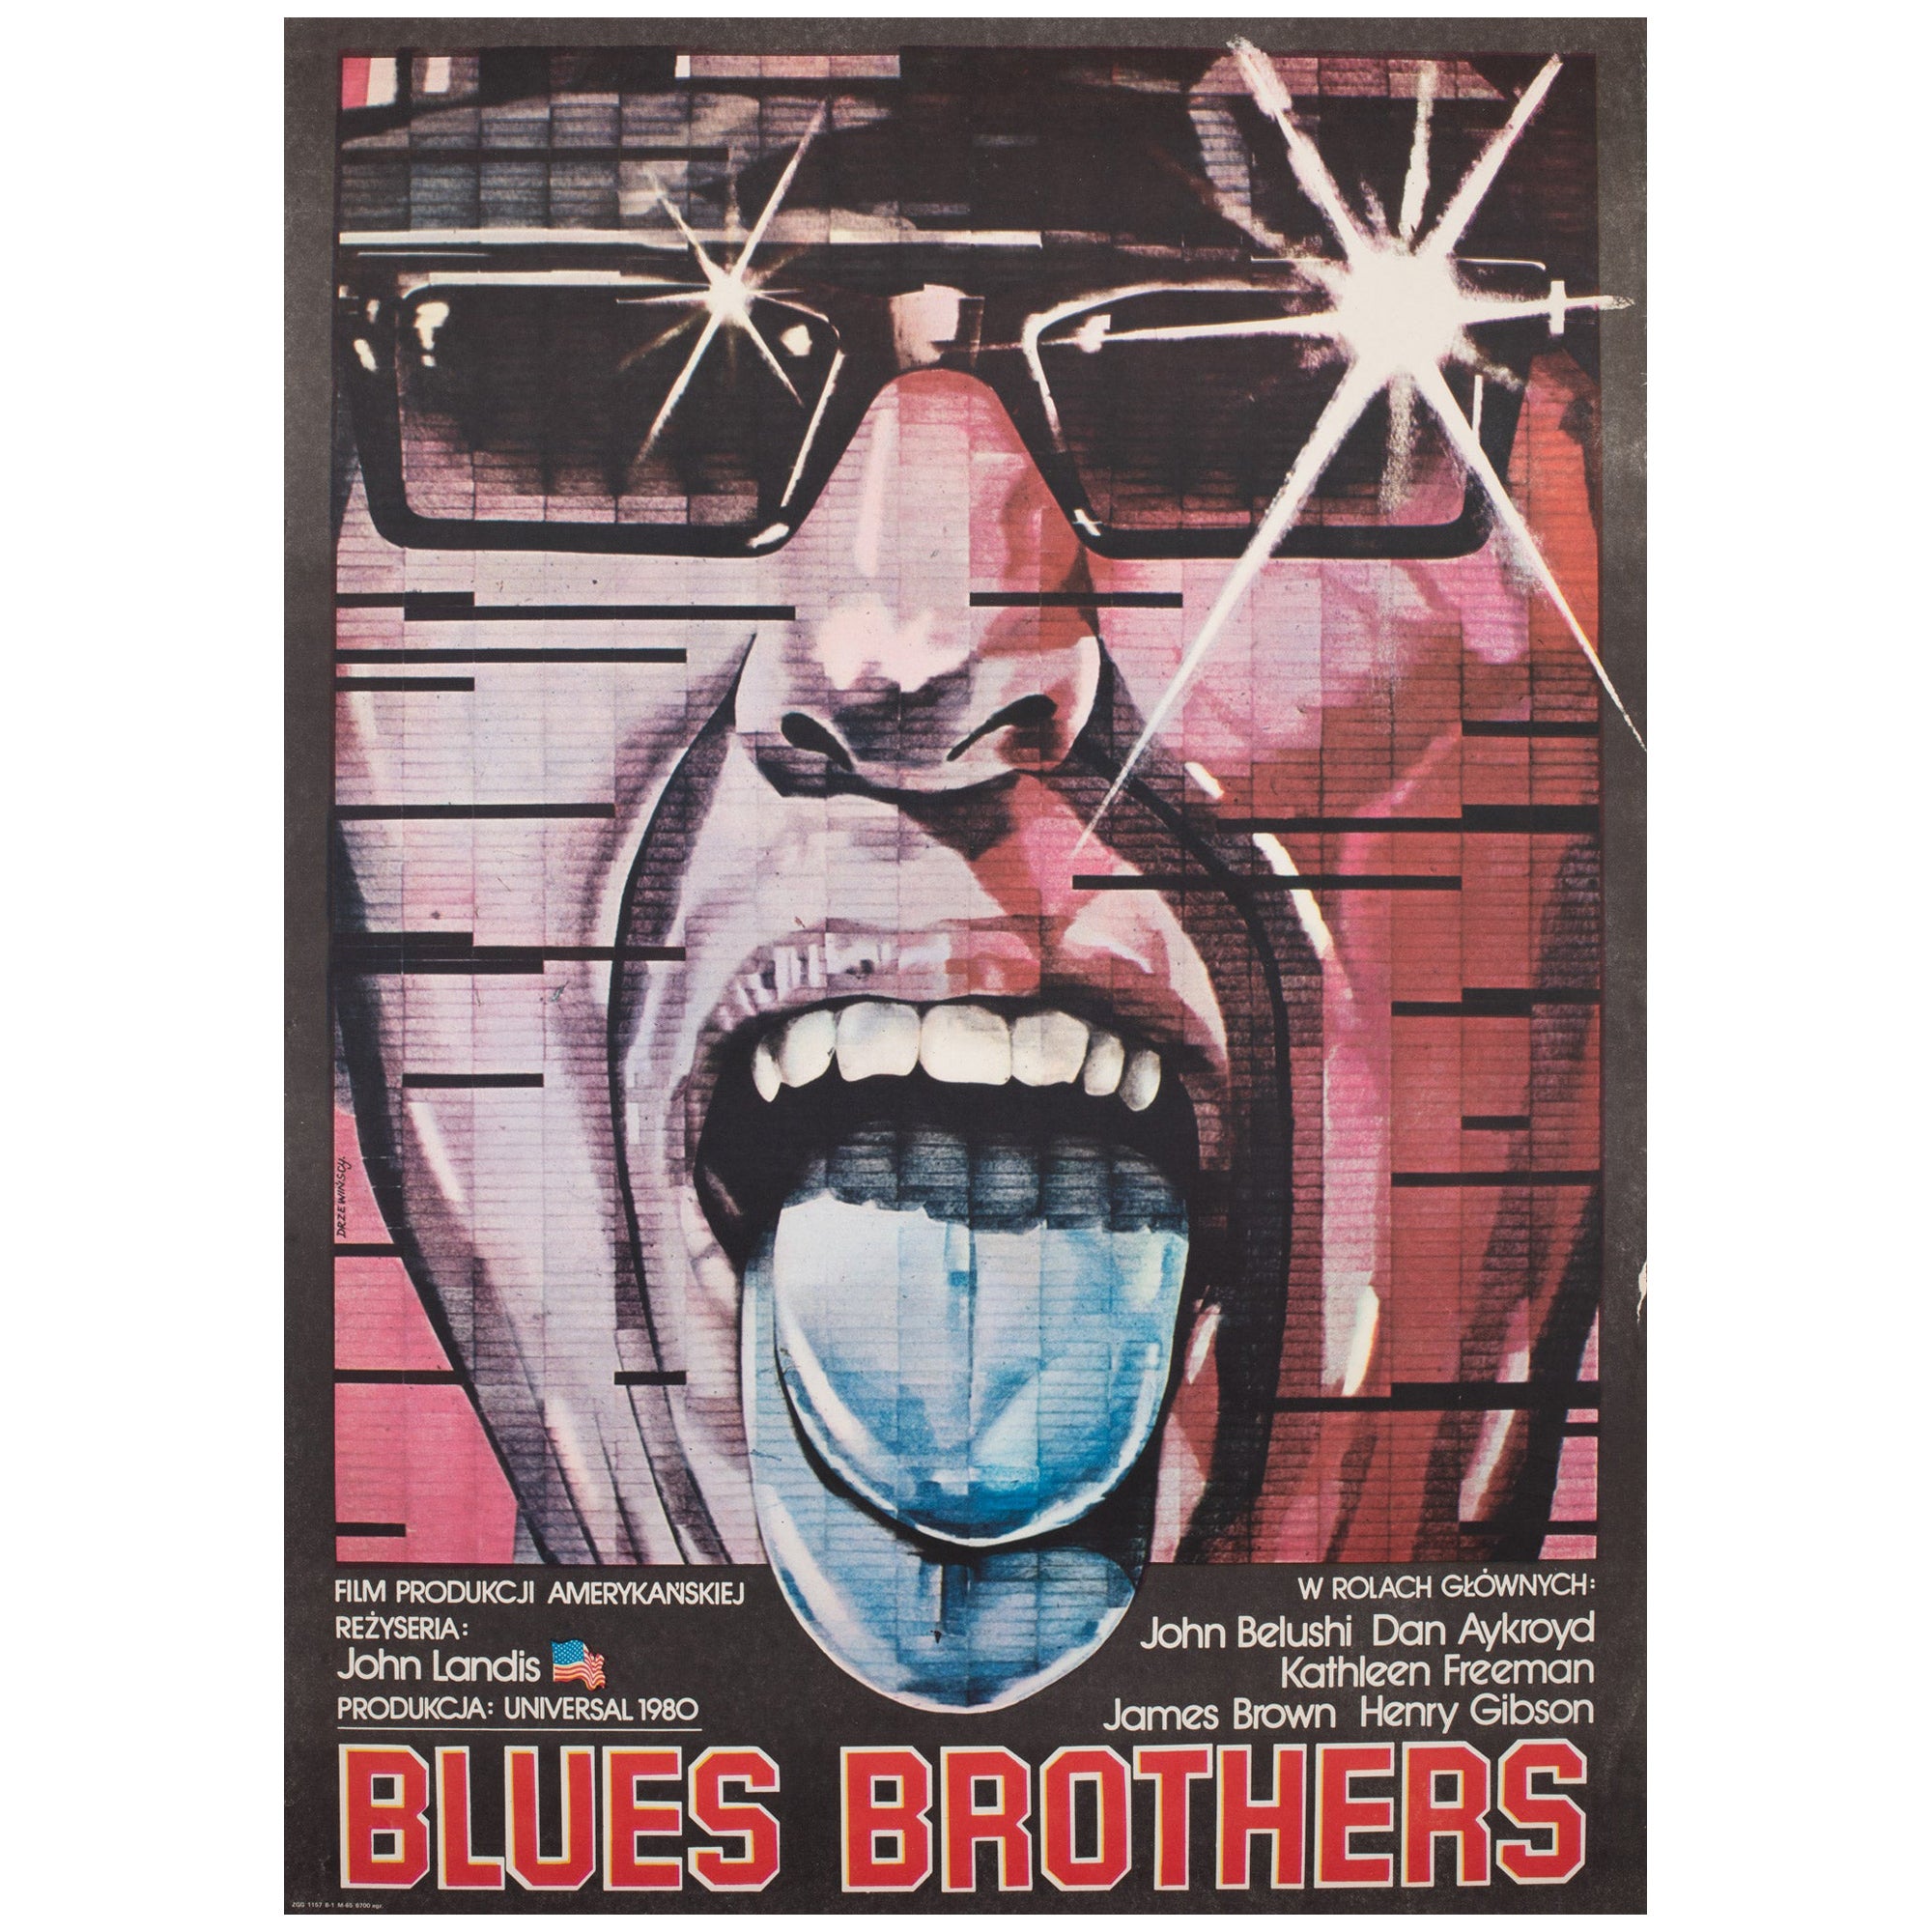 Affiche B1 polonaise du film Blues Brothers, Drzewinski, 1982